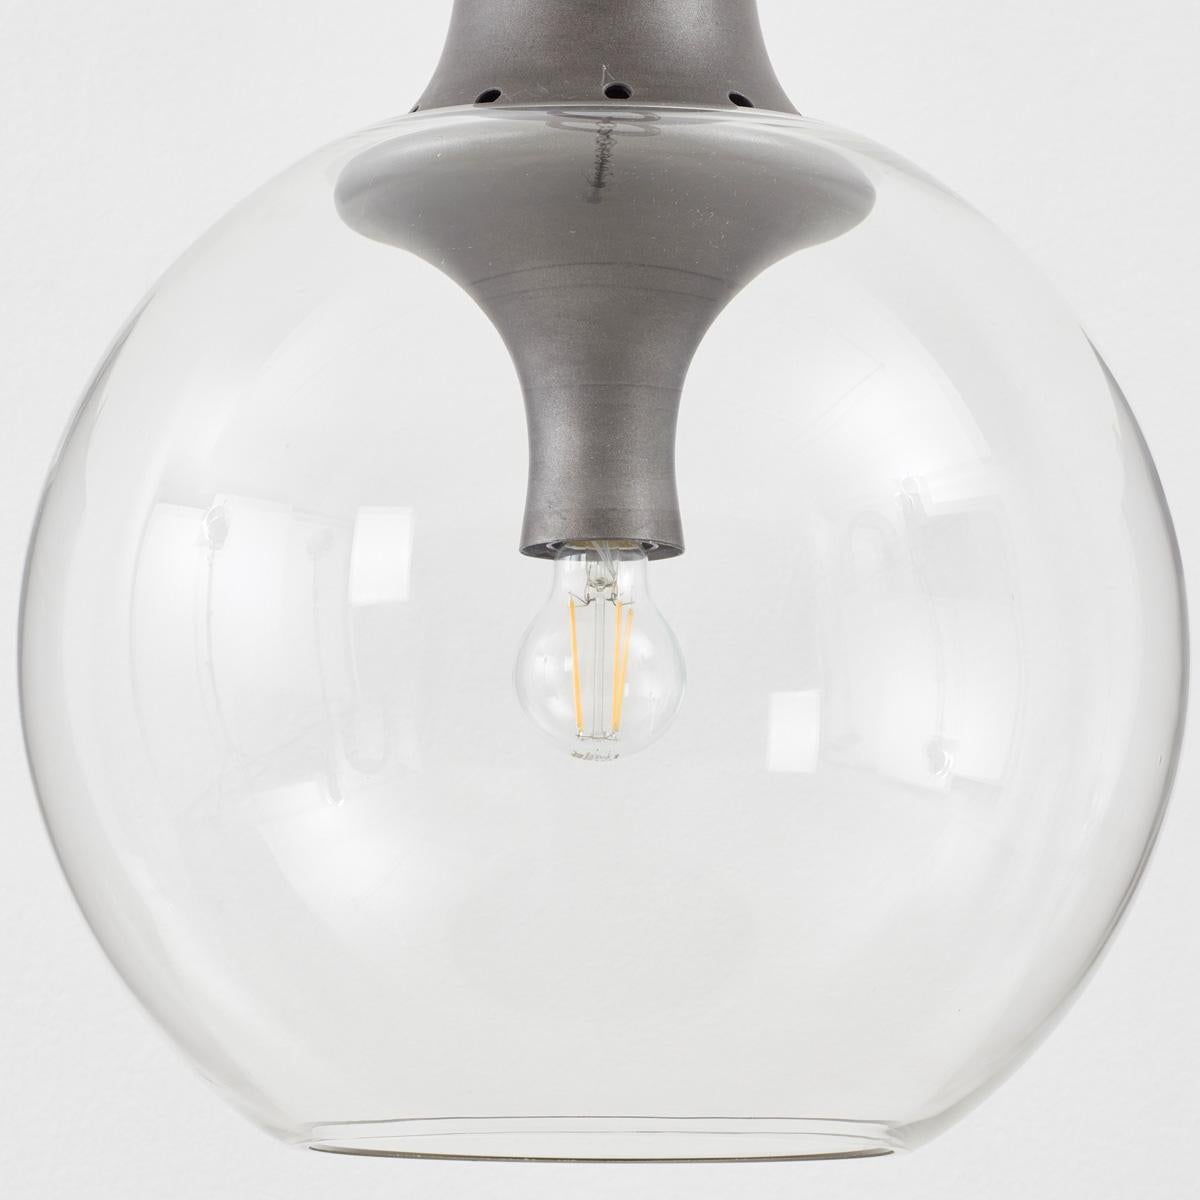 Luigi Caccia Dominioni LS10 Boccia Lamp with Clear Glass for Azucena, Italy 1964 In Good Condition For Sale In London, GB